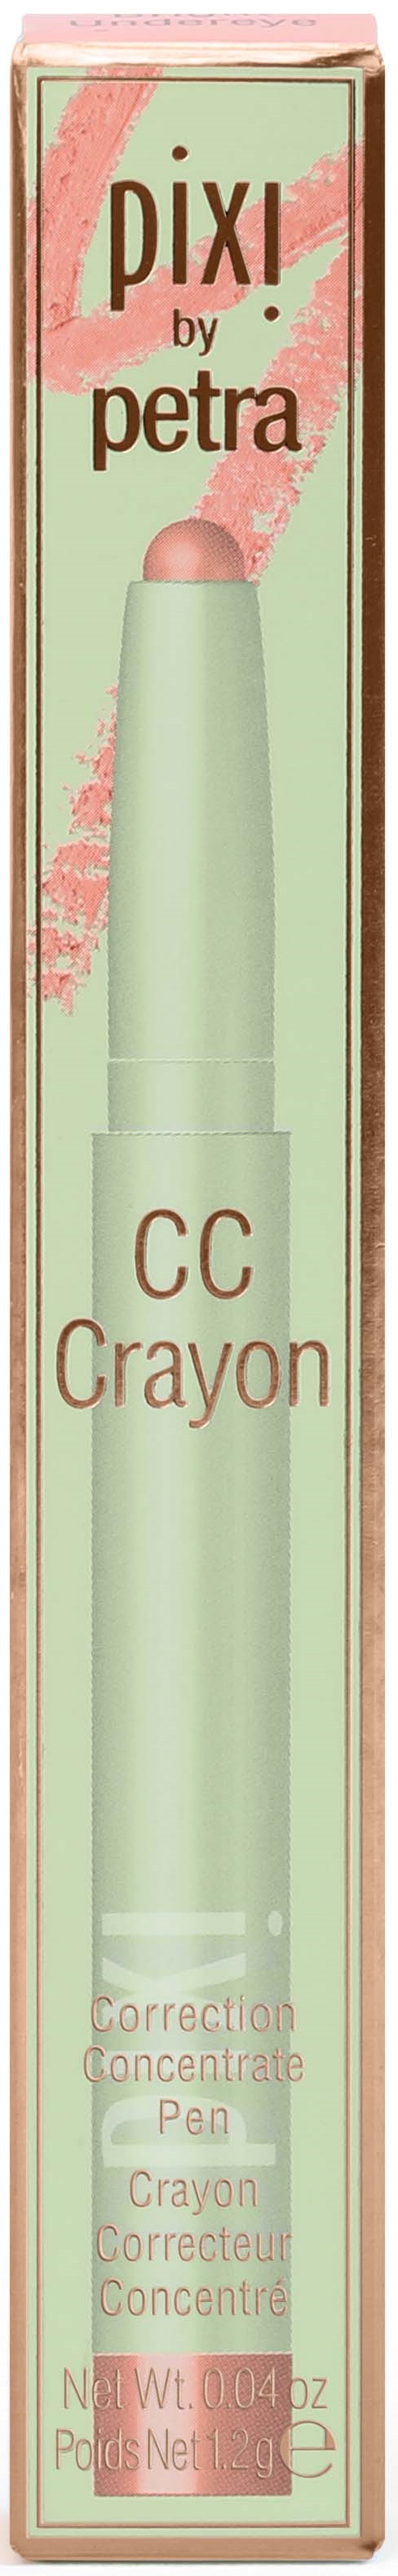 CC Crayon – Pixi Beauty